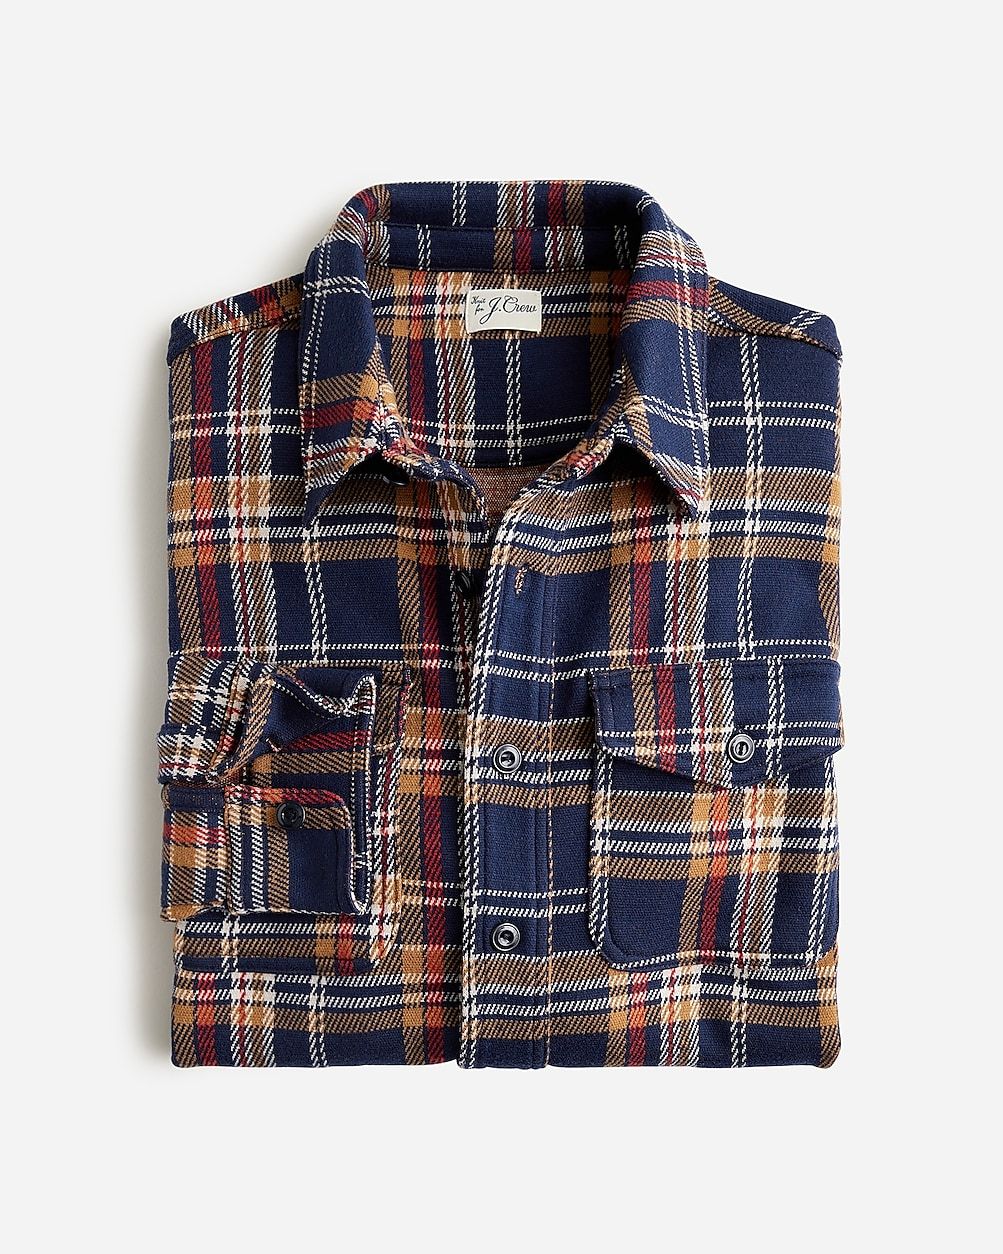 Seaboard soft-knit shirt in plaid | J.Crew US